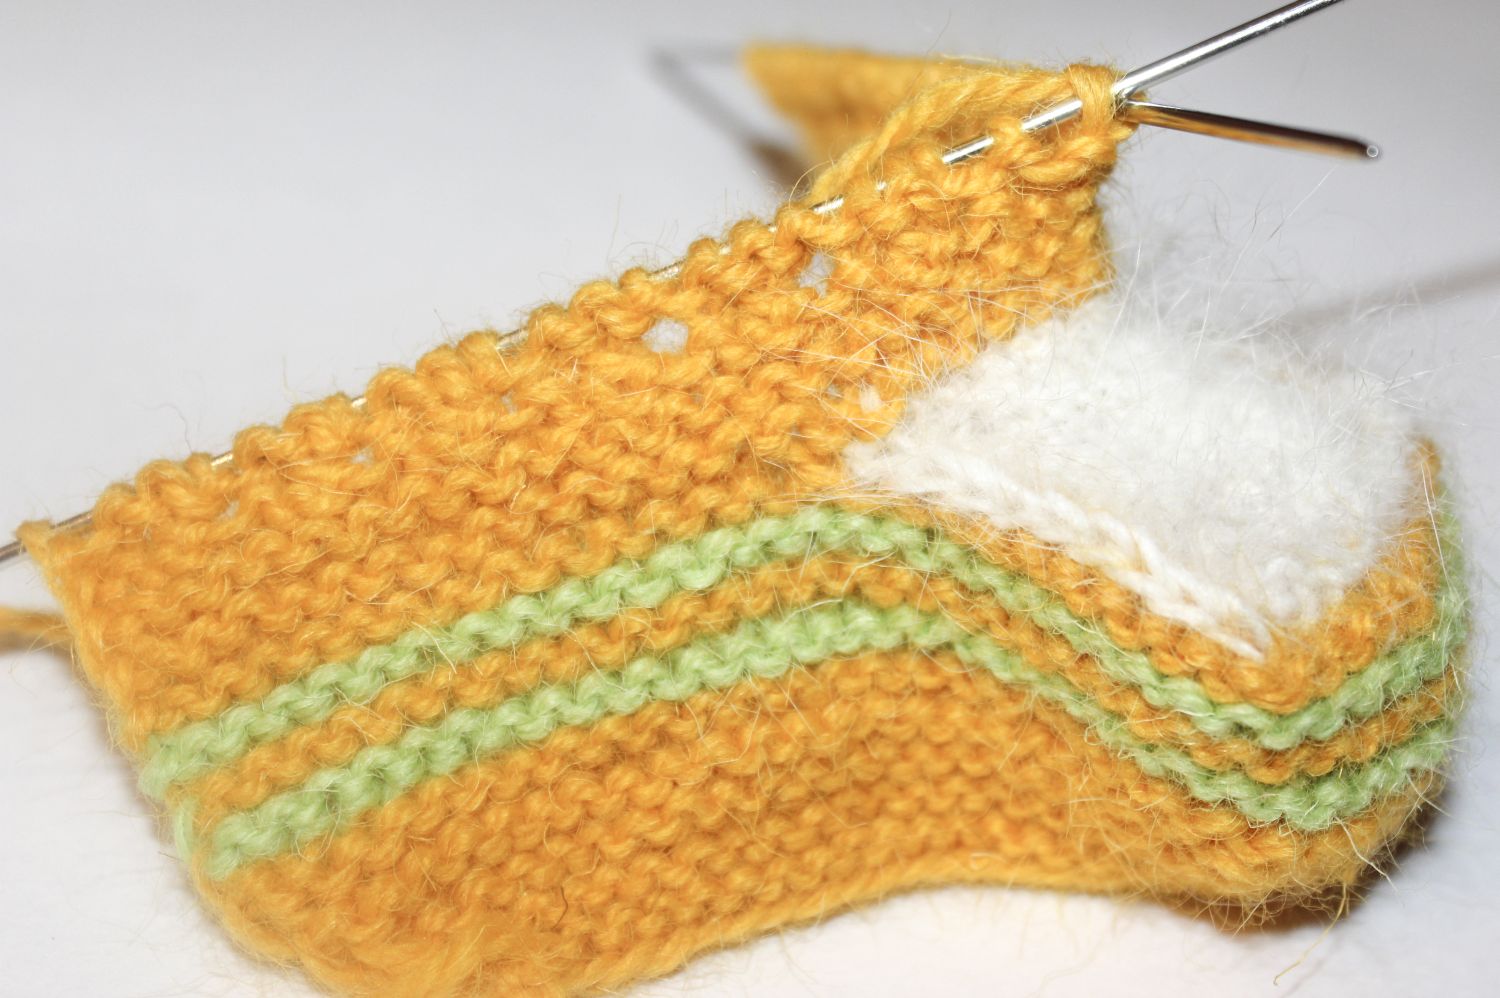 Как связать пинетки спицами - пошаговые схемы плетения для начинающих с описанием, фото и видео